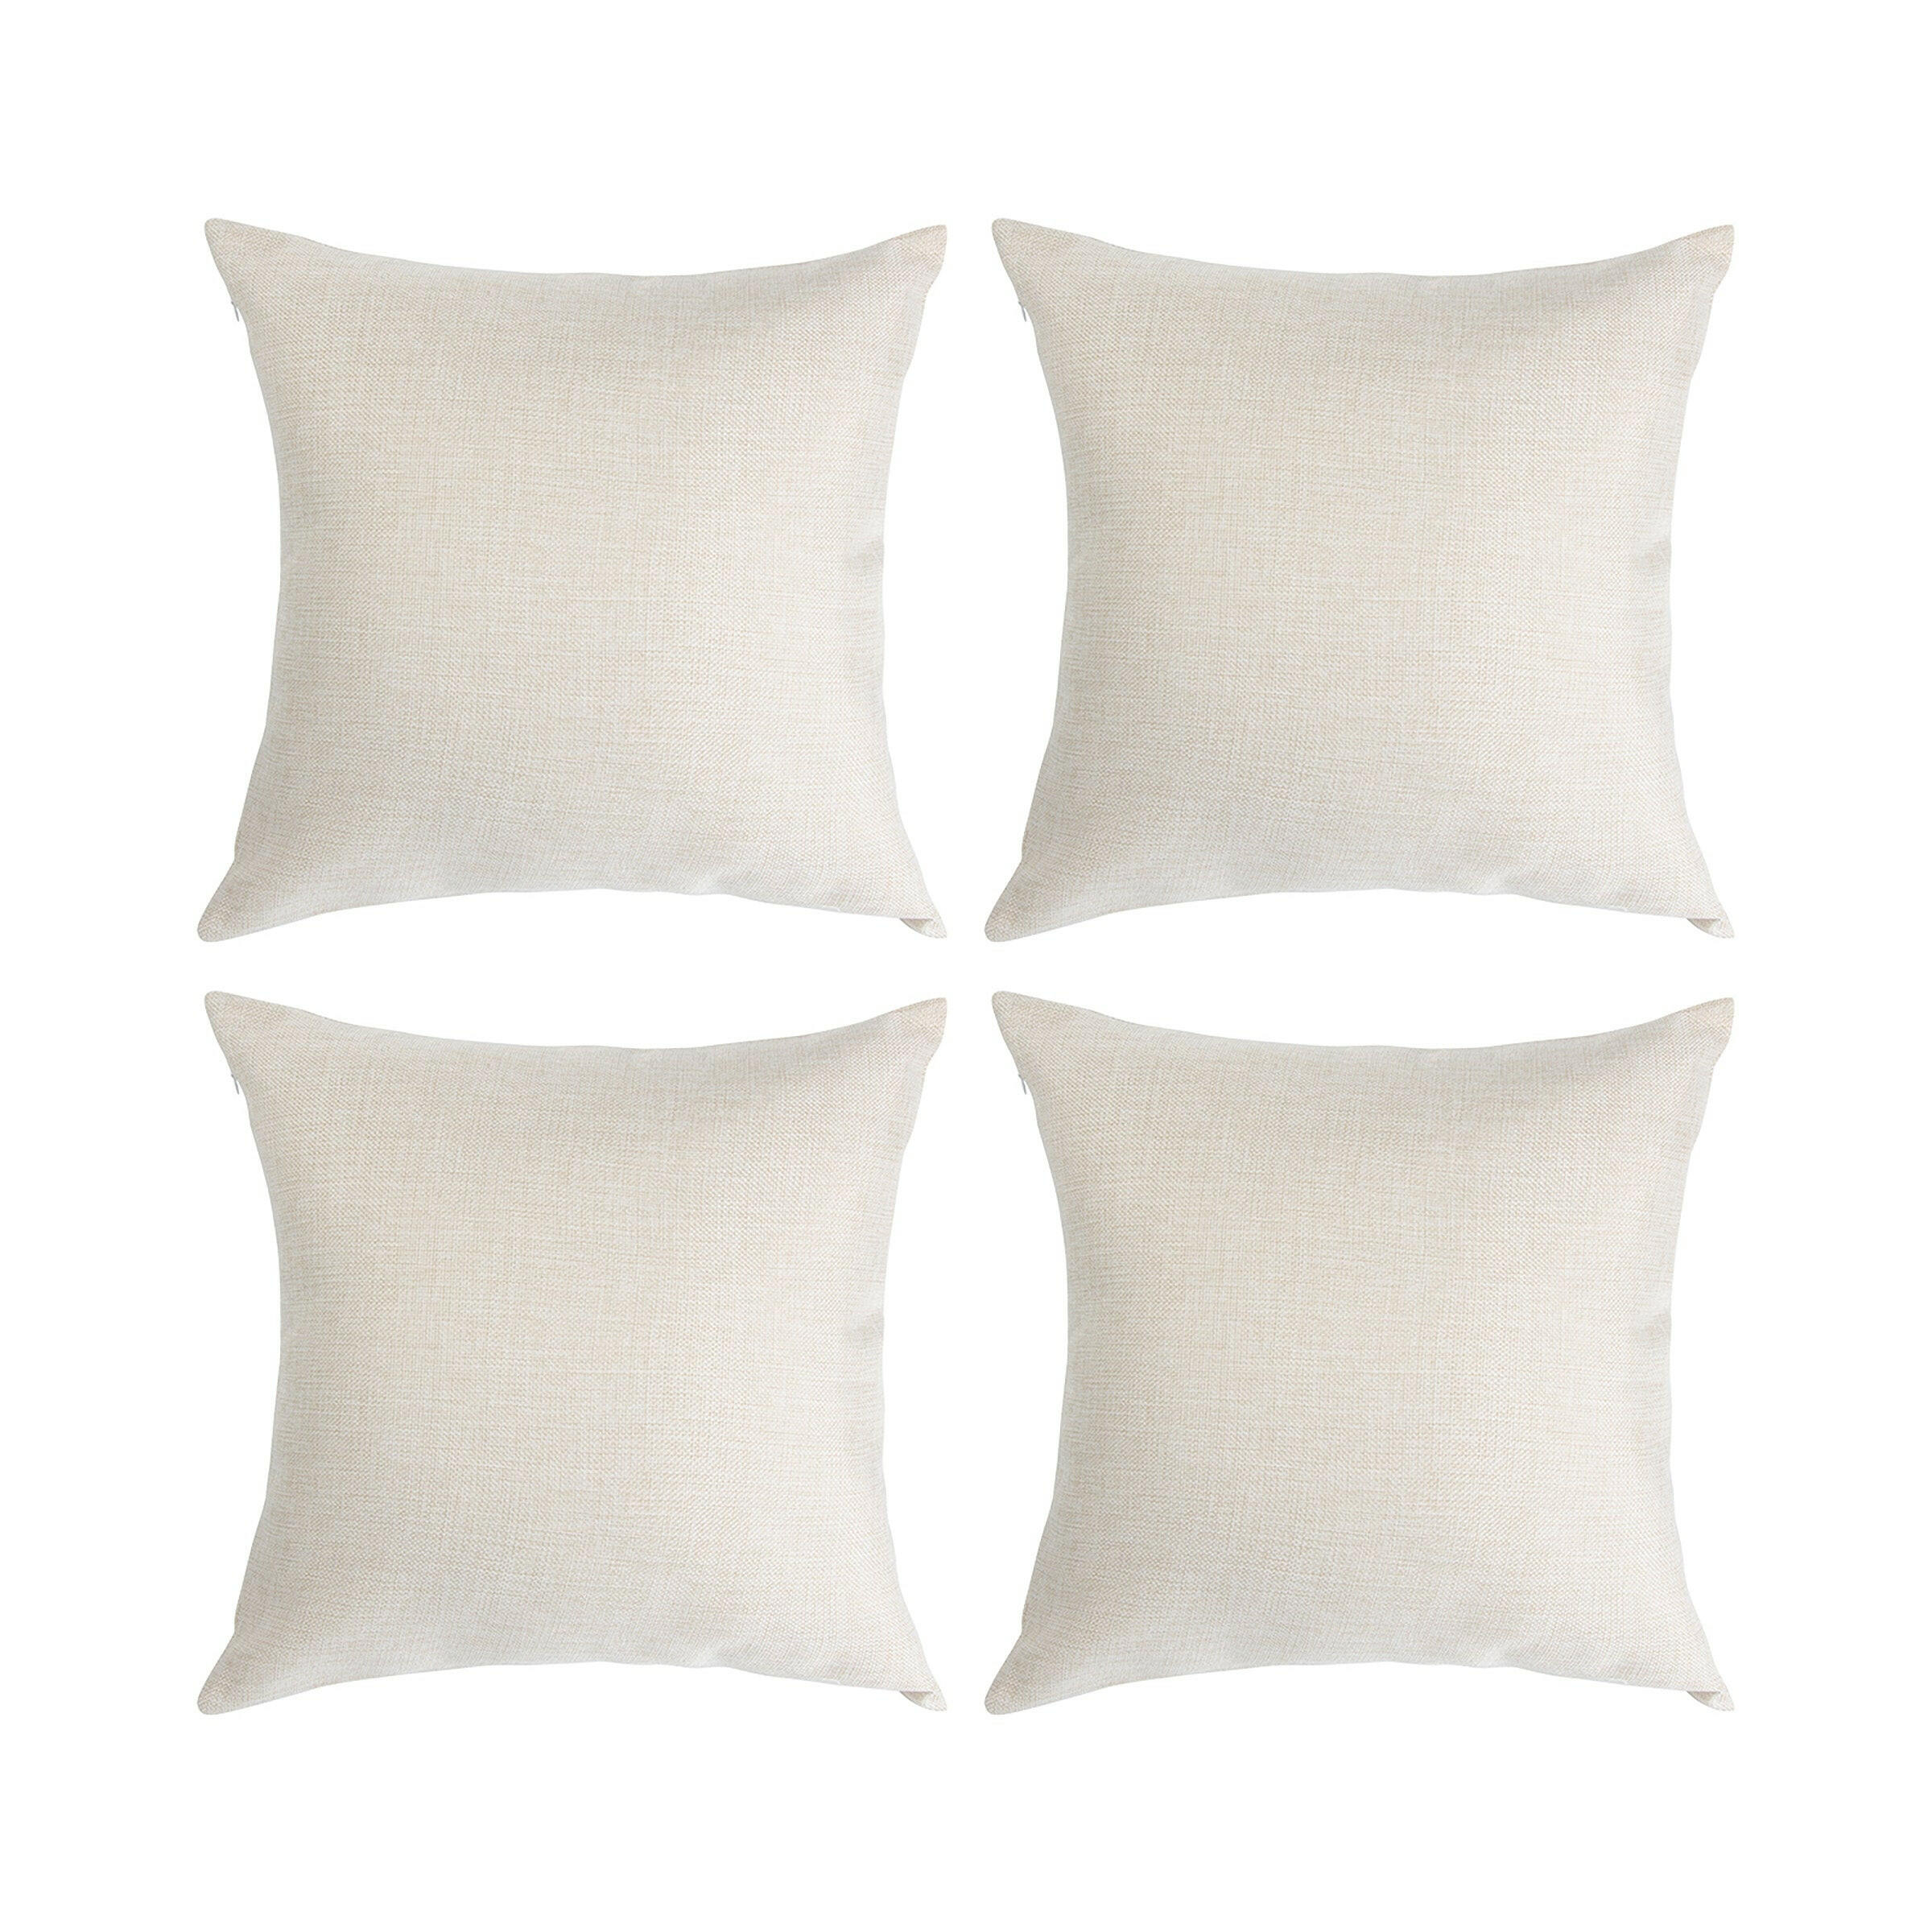 Linen Sublimation Pillow Cases - 4 Pack.